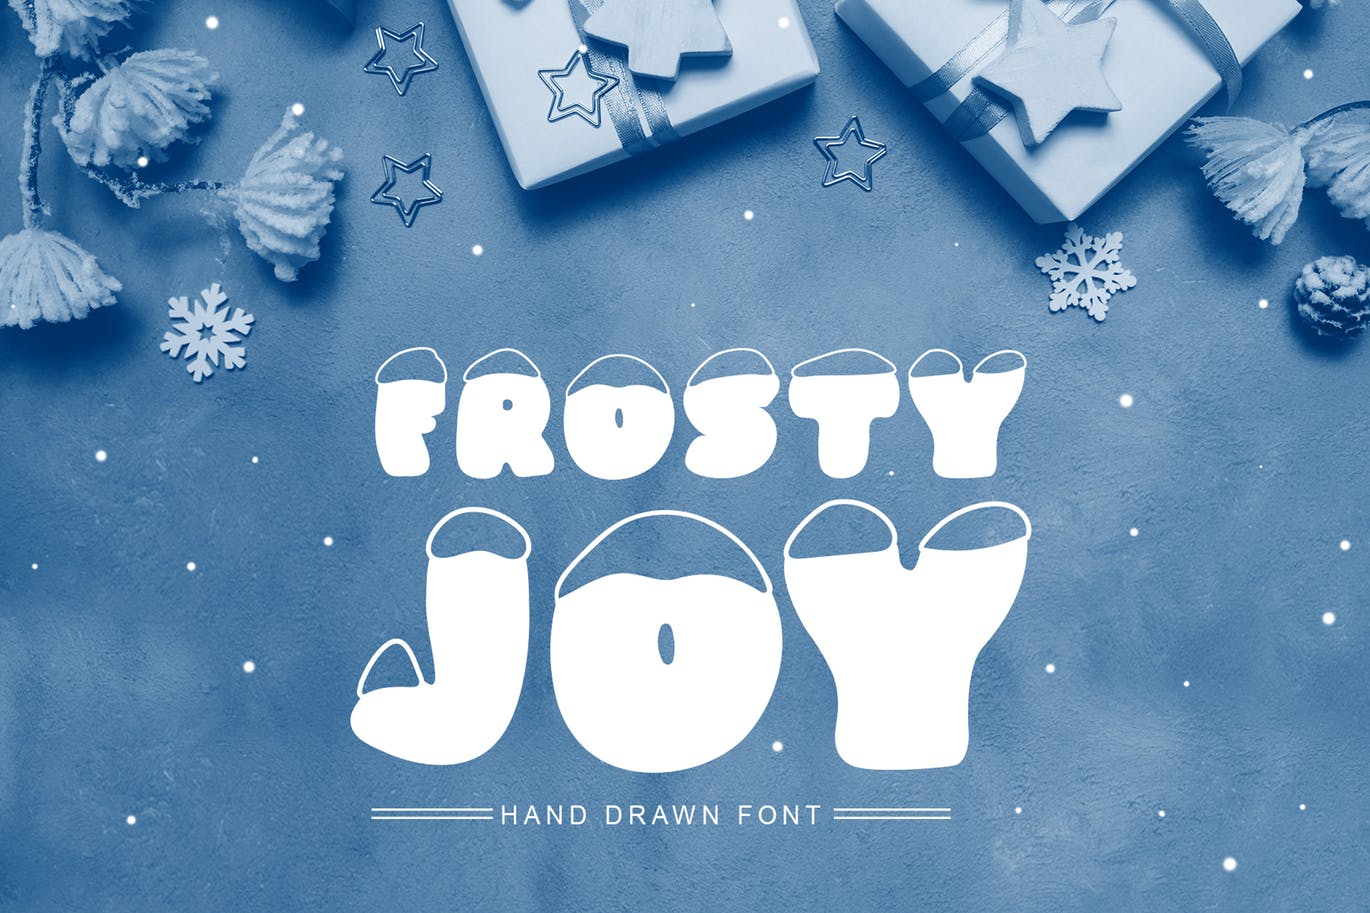 斯堪的纳维亚风格可爱积雪字体非凡图库精选 Frosty Joy Hand Drawn Display Font插图